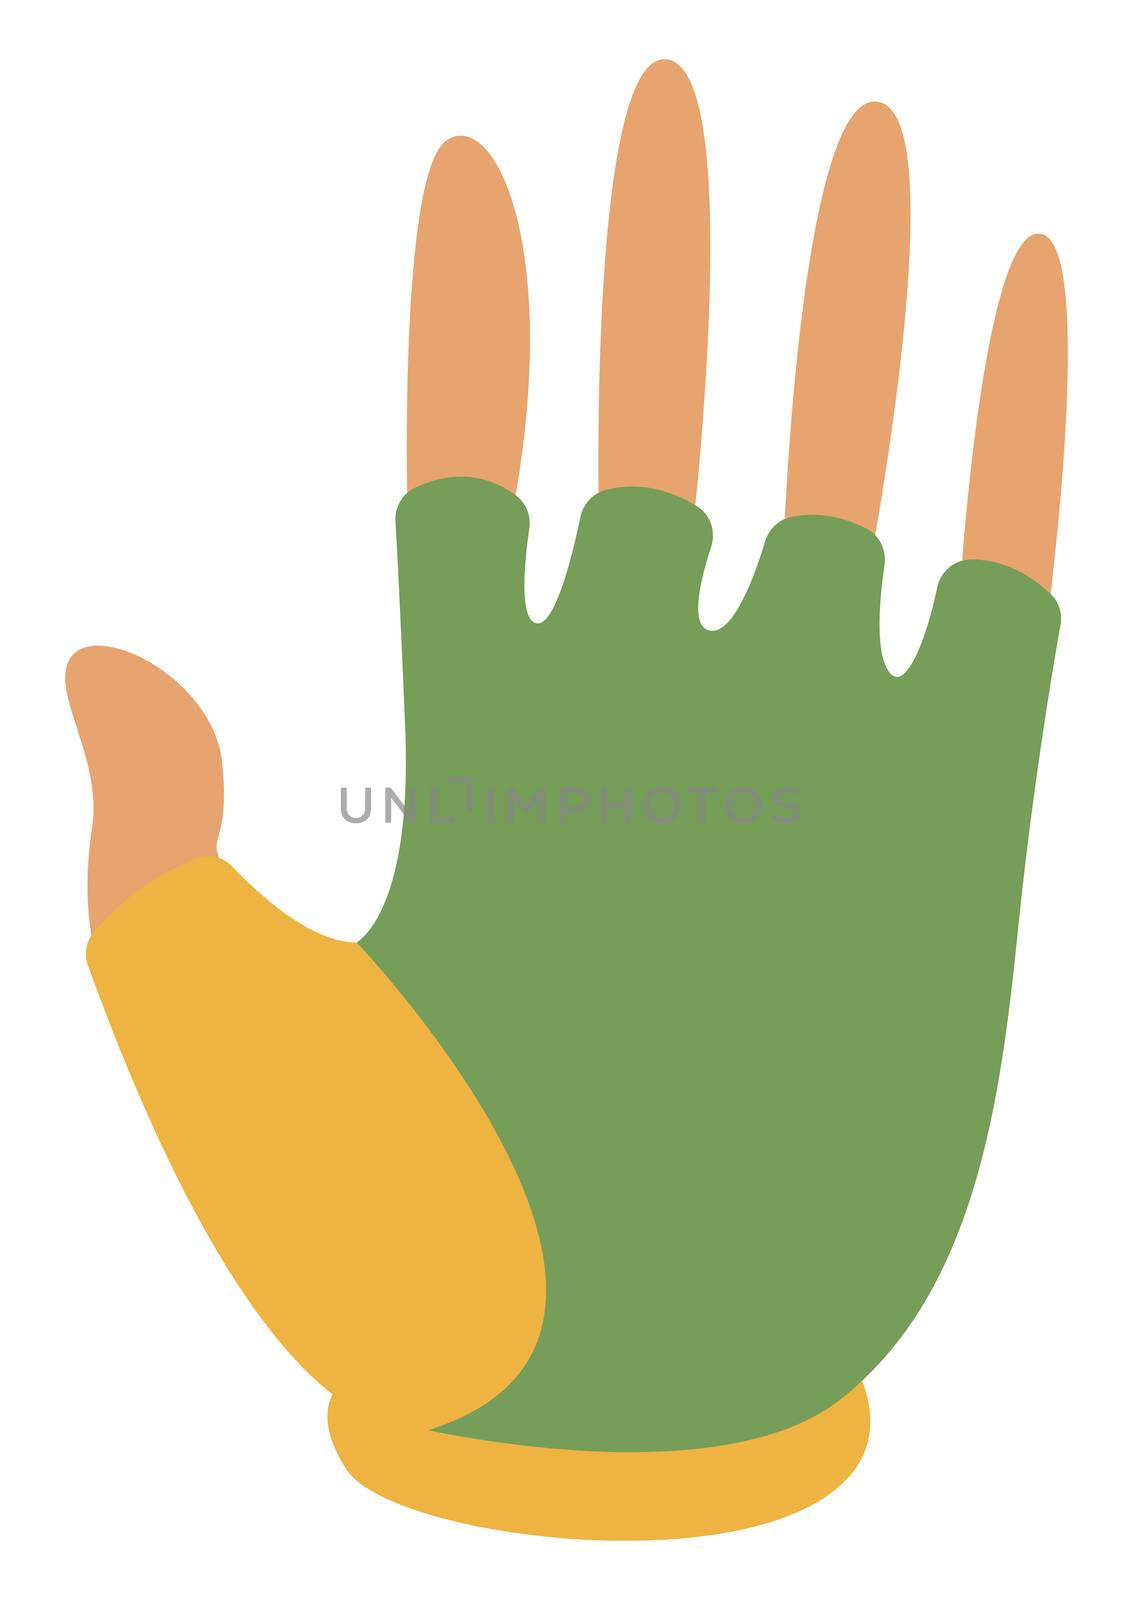 Green bike gloves, illustration, vector on white background by Morphart